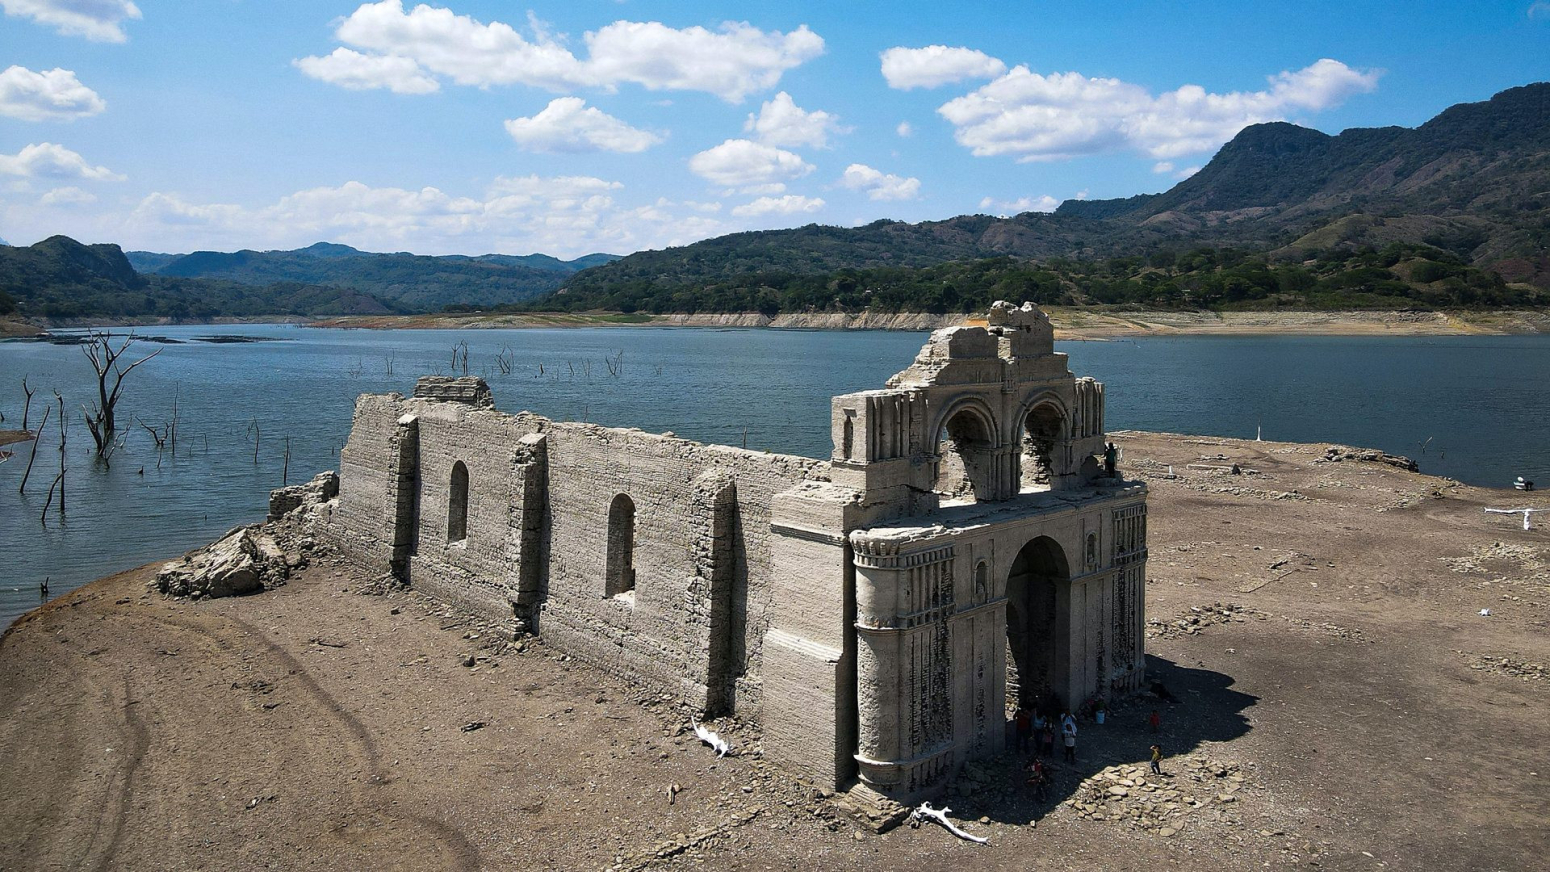 Crkva iz 16. veka u Meksiku izronila iz vode usled velike suše